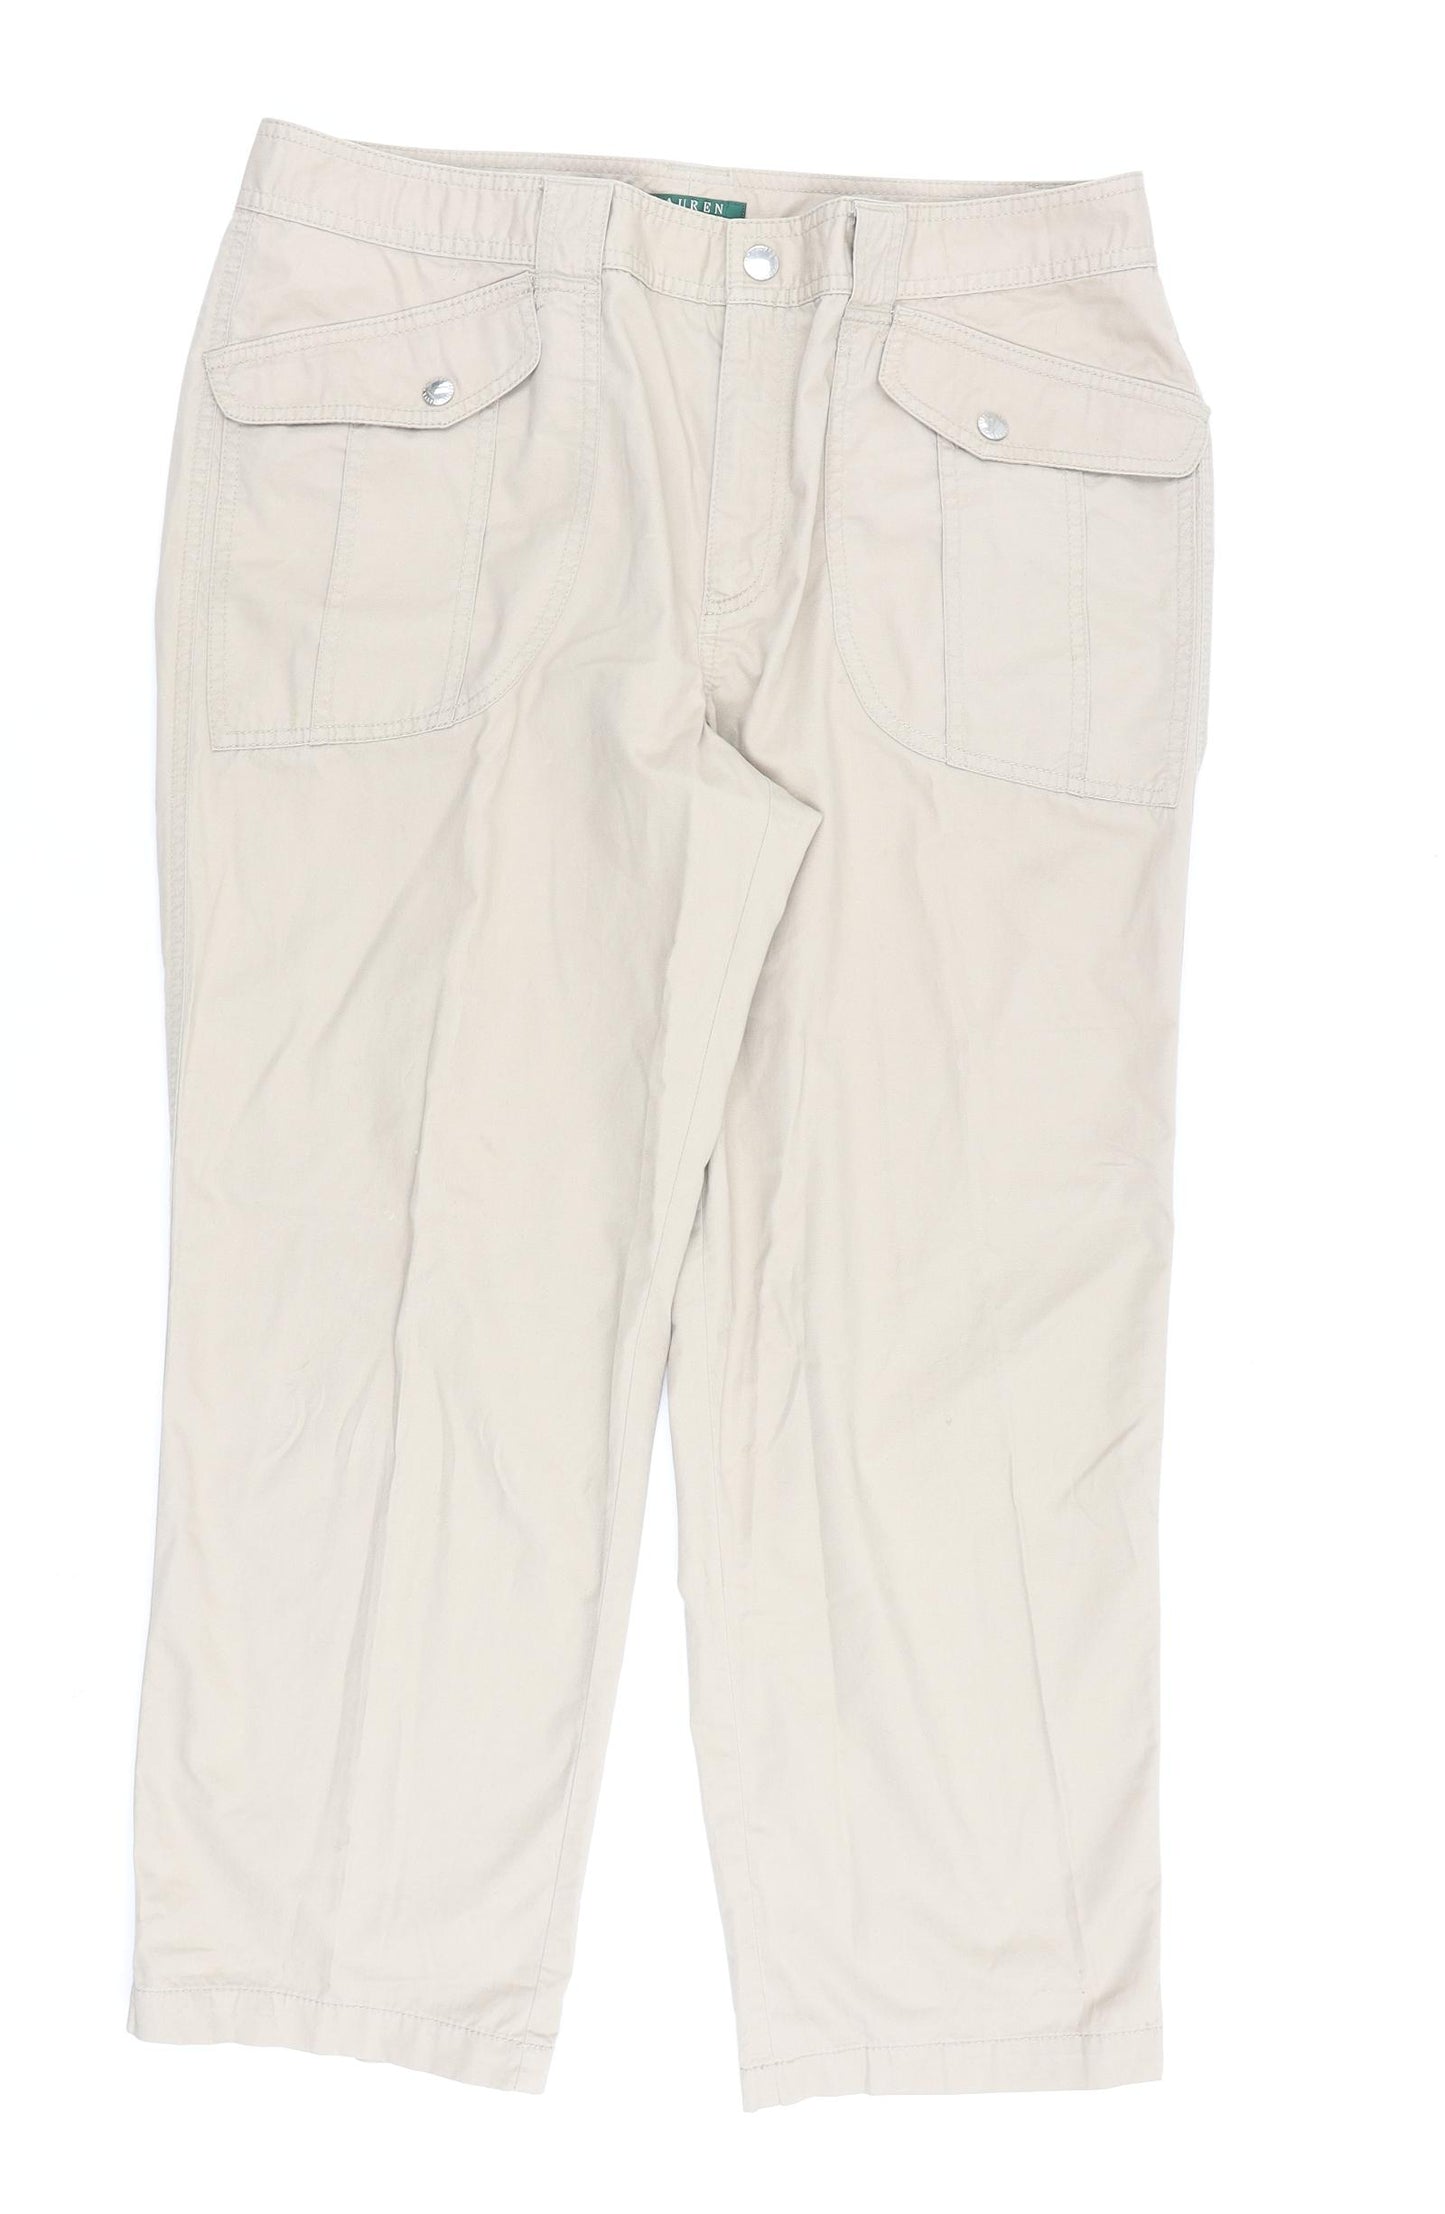 Ralph Lauren Womens Beige Cotton Trousers Size 14 L26 in Regular Zip